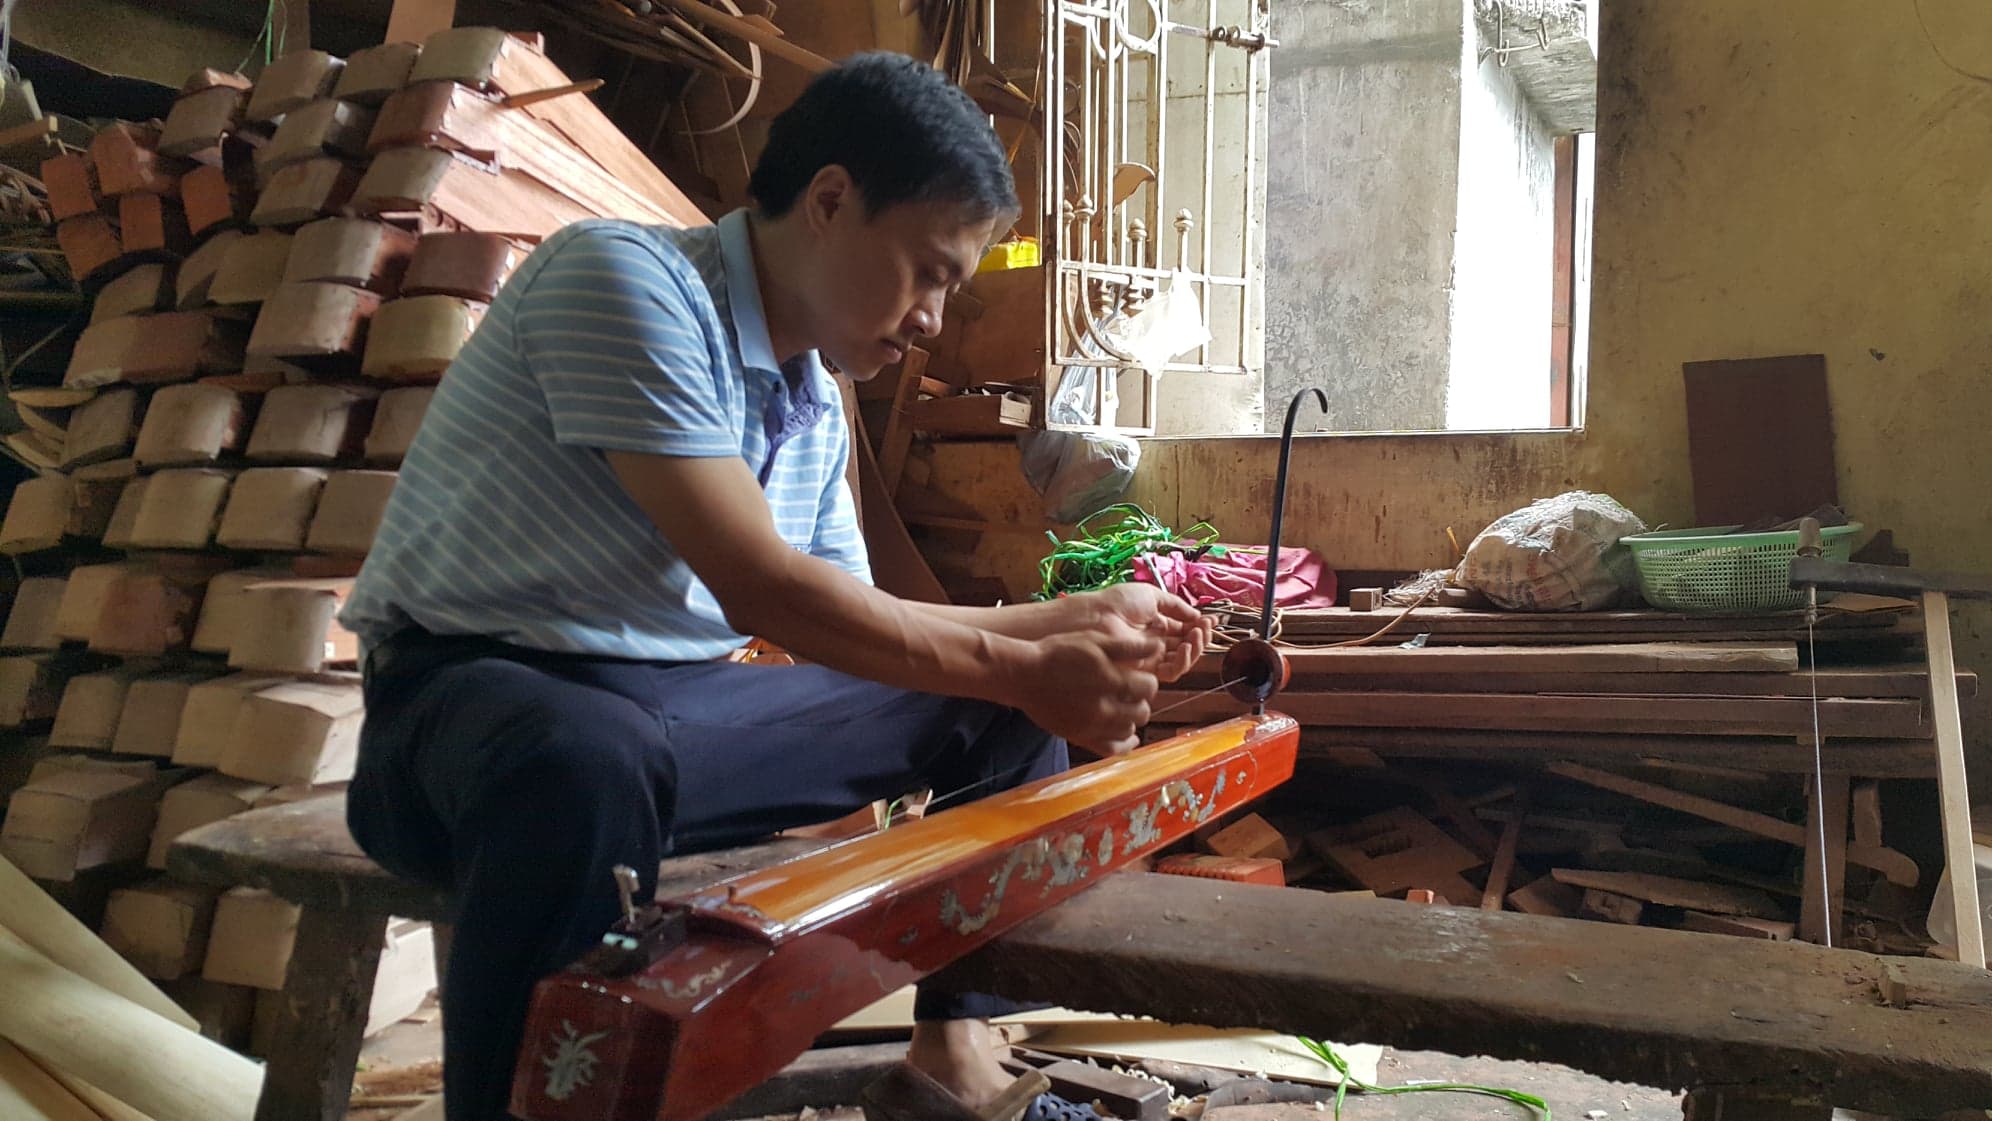 Anh Đỗ Việt Dũng kế tục truyền thống làm nhạc cụ của gia đình như một lẽ tự nhiên. Nguồn: TTXVN